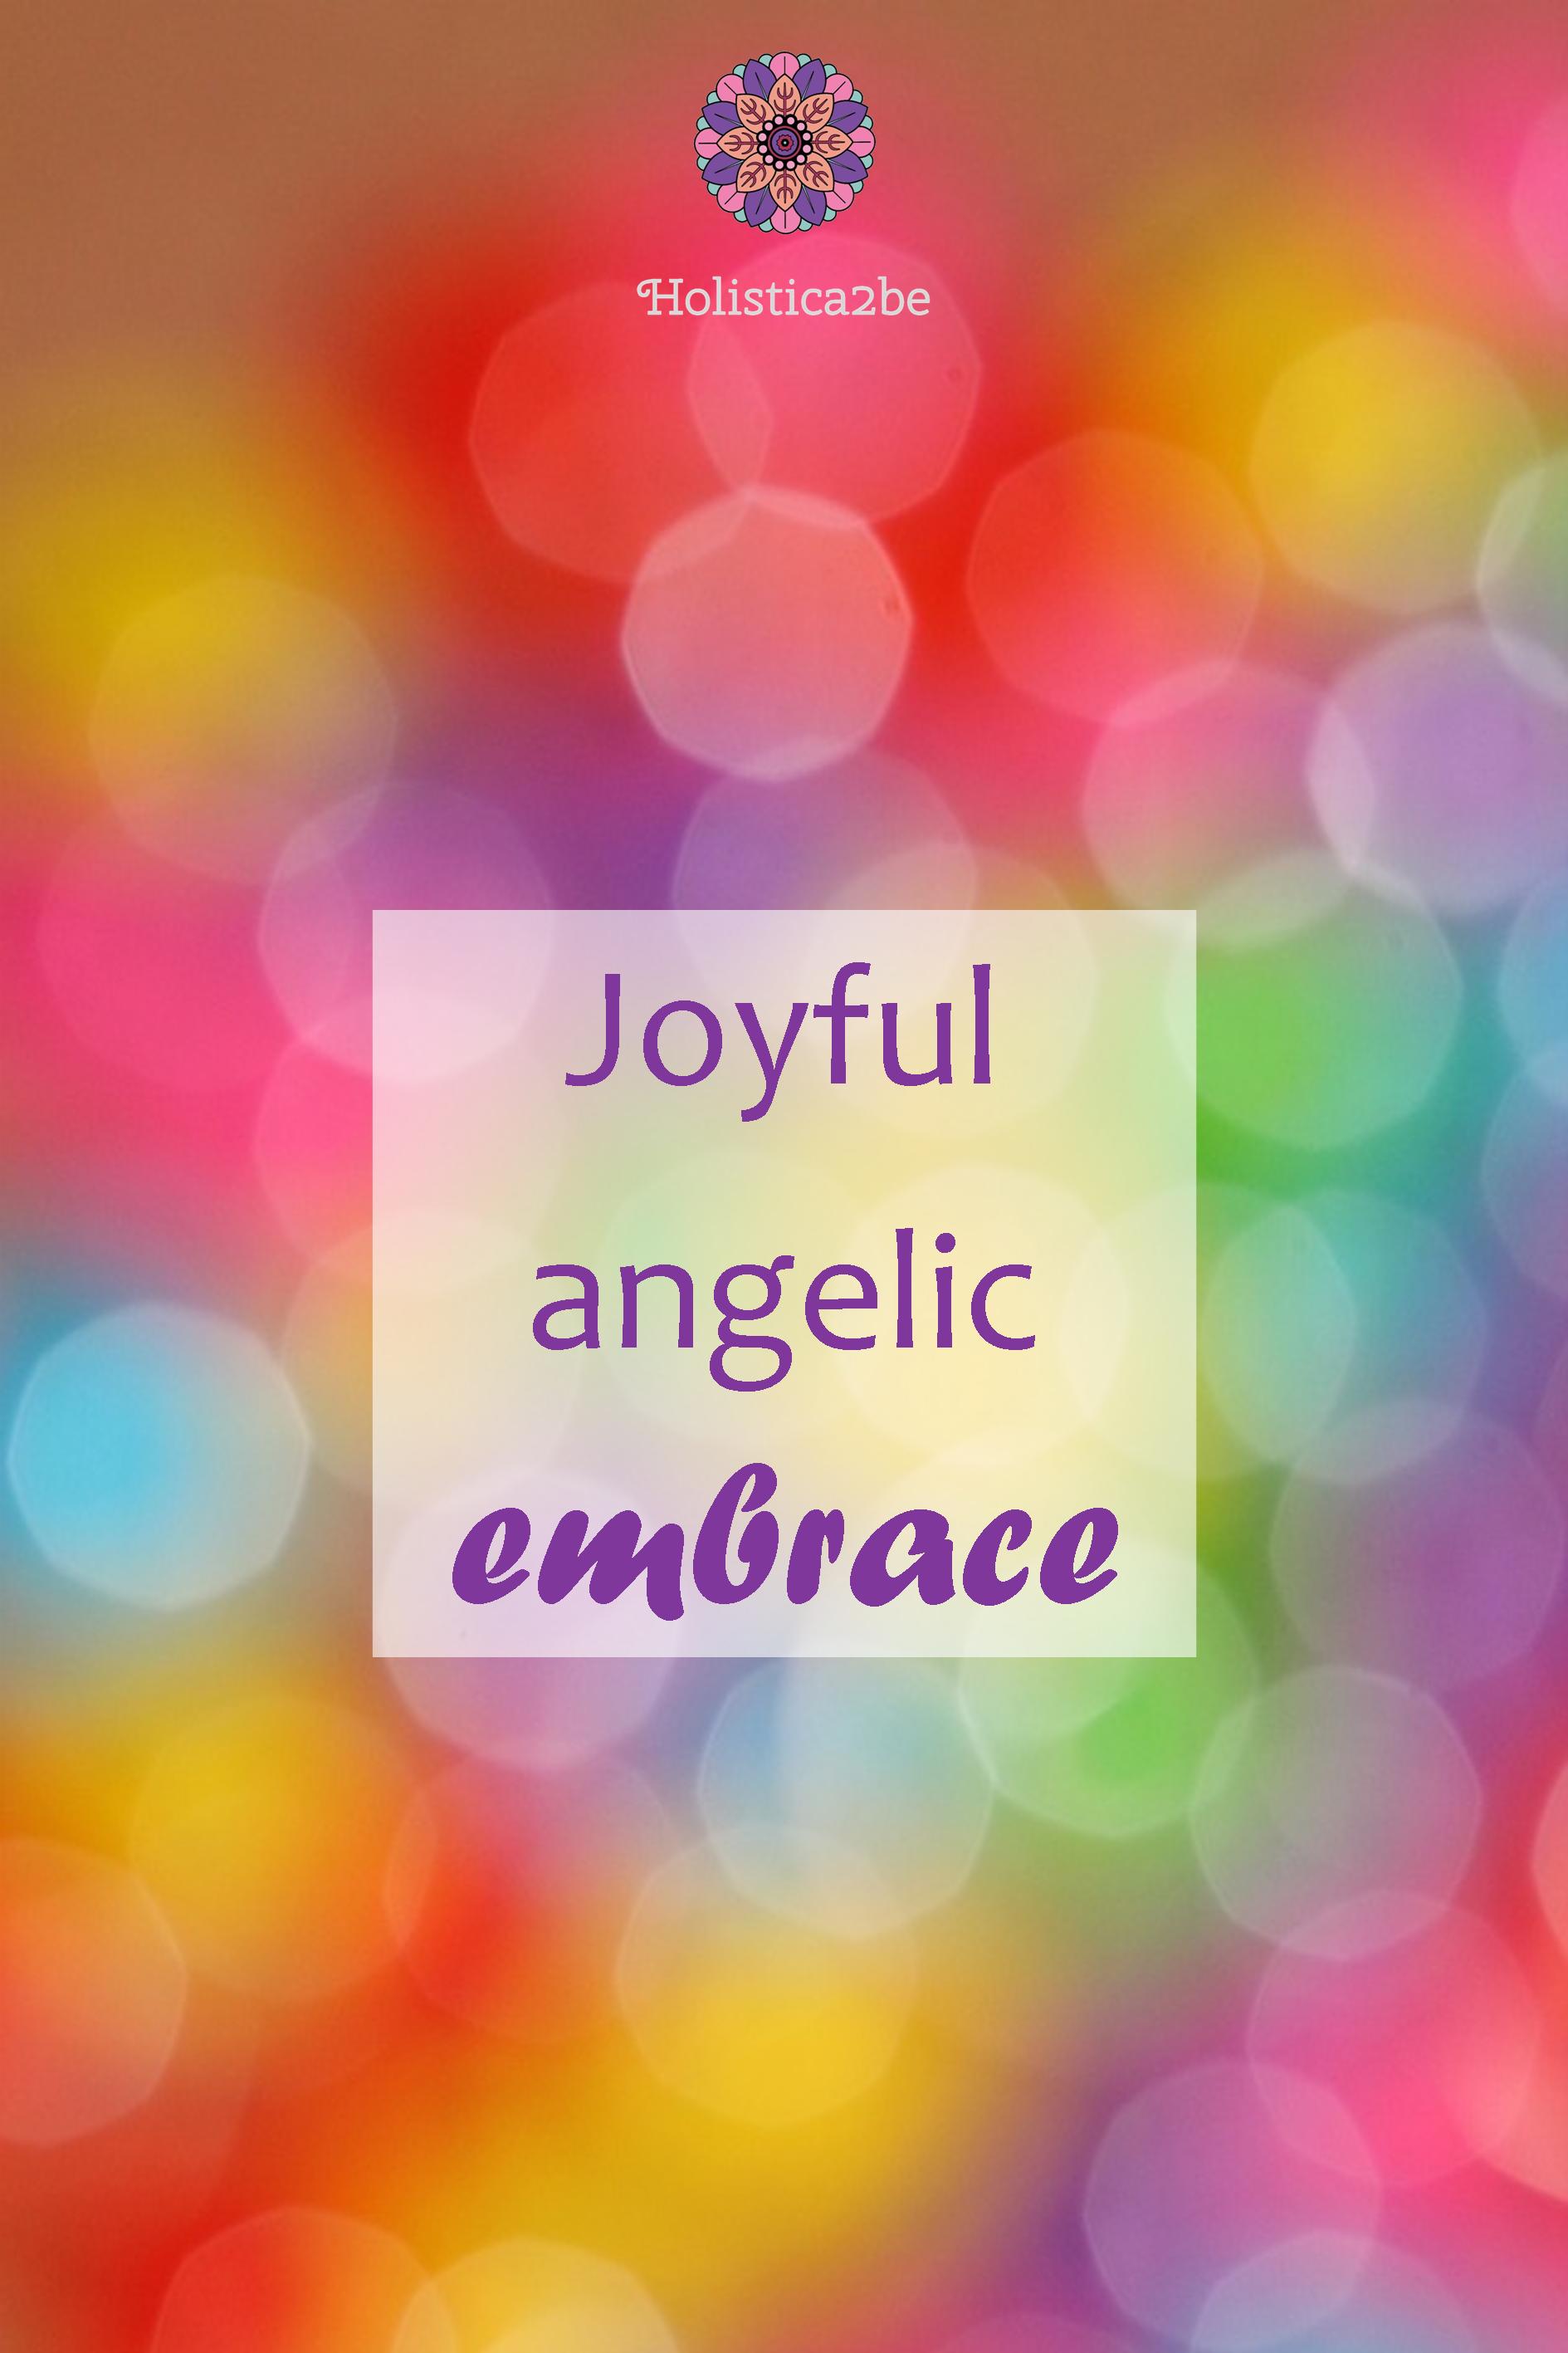 Joyful angelic embrace